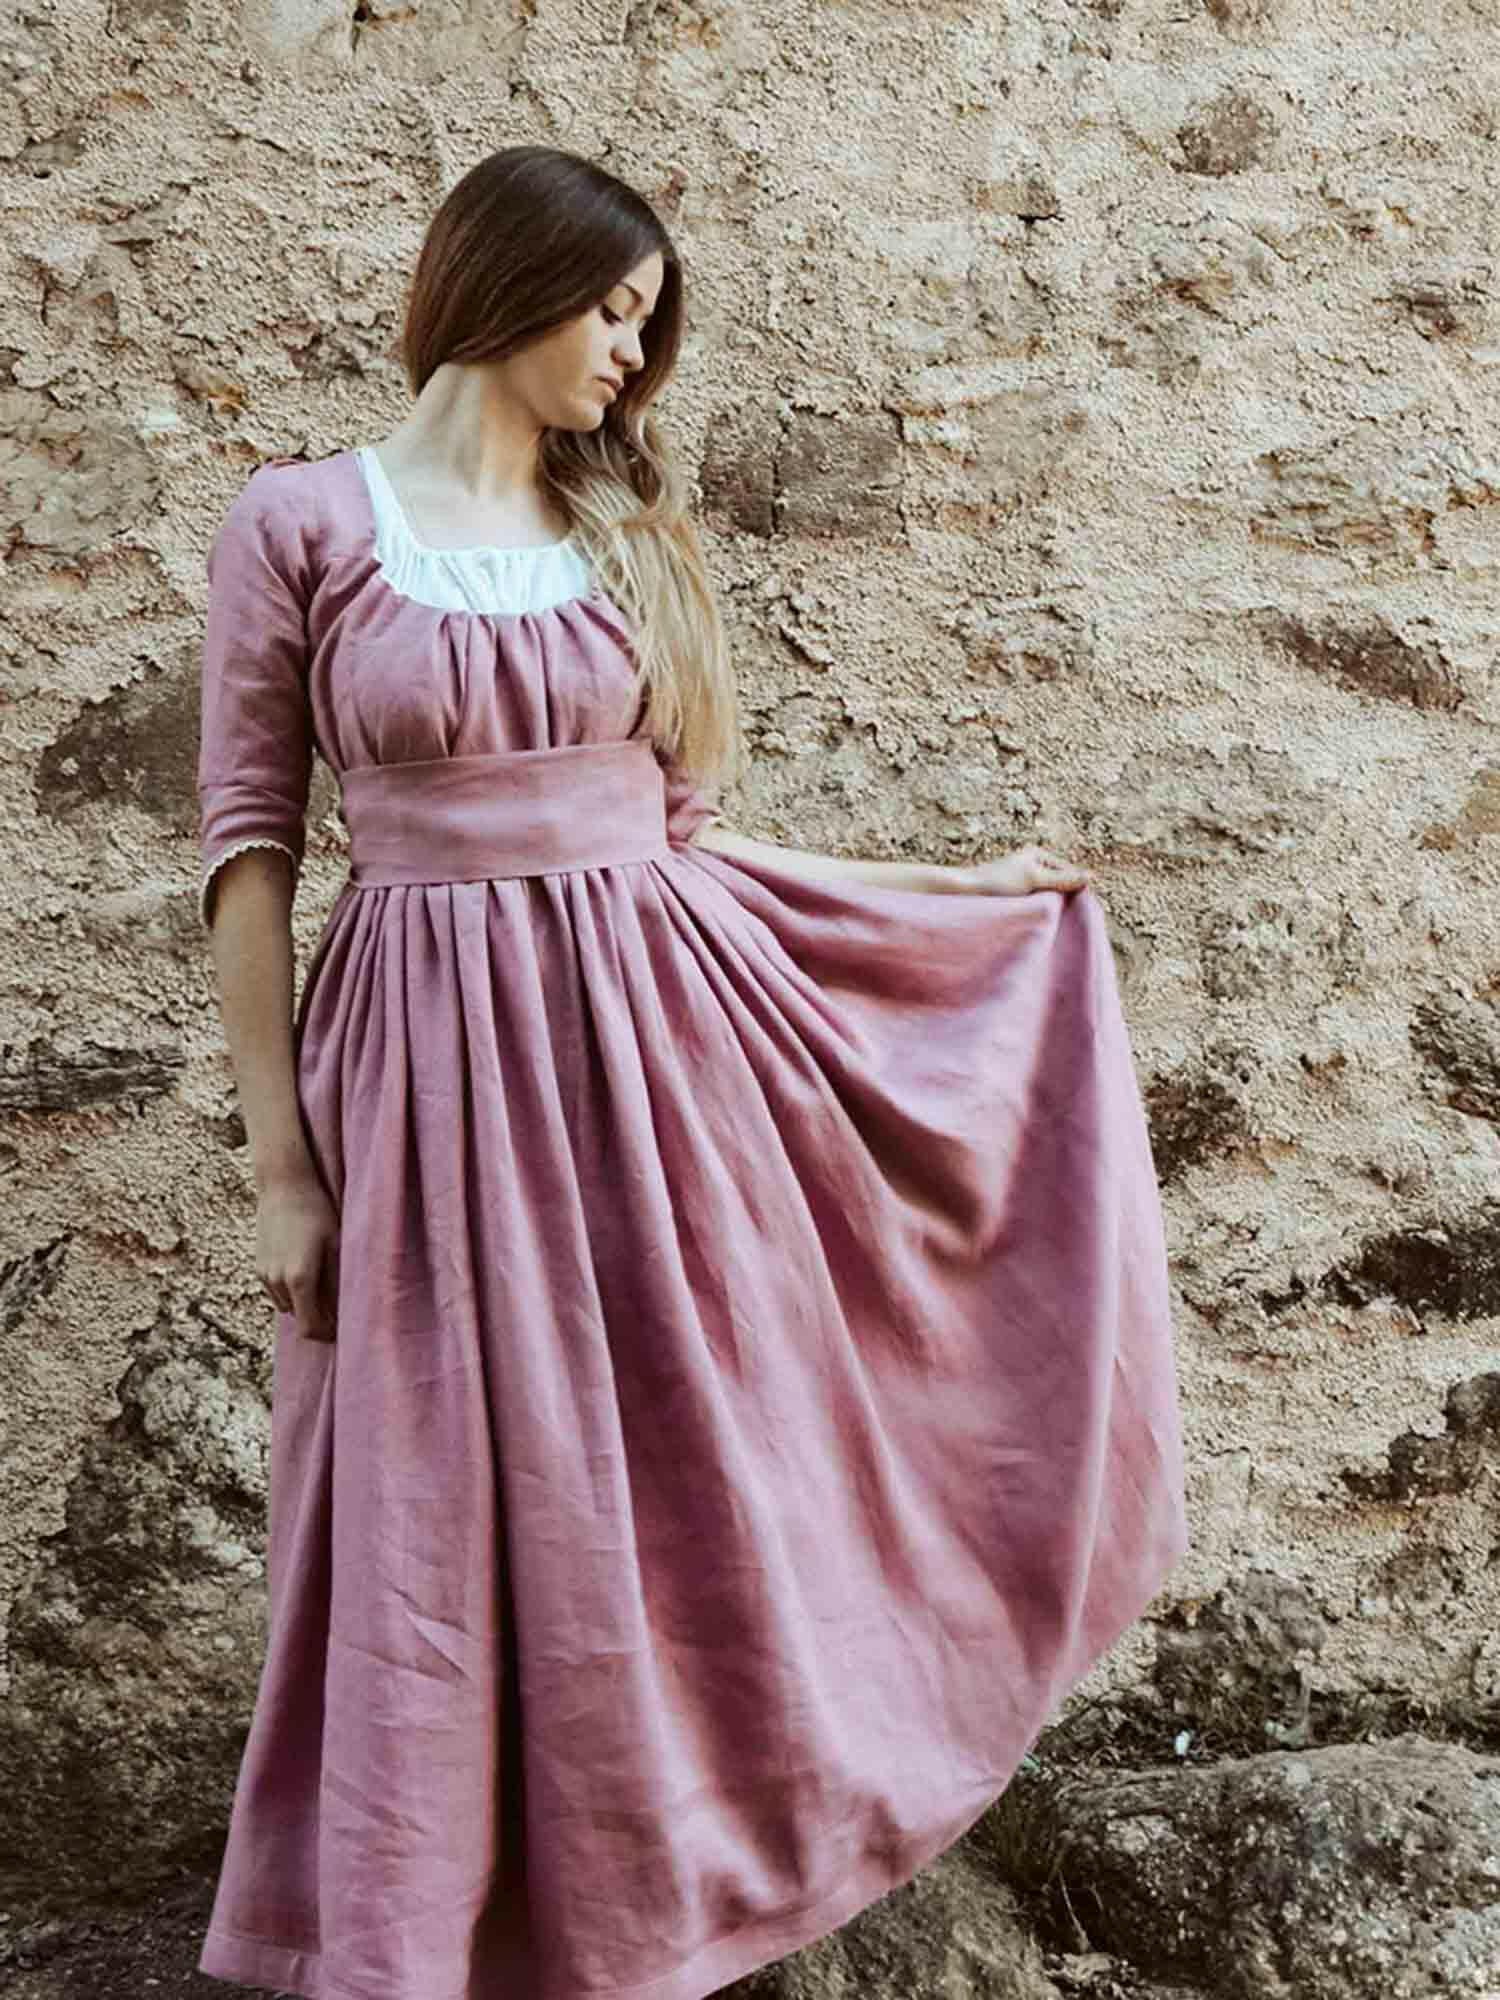 Regency Dress in Old Pink Linen - Atelier Serraspina